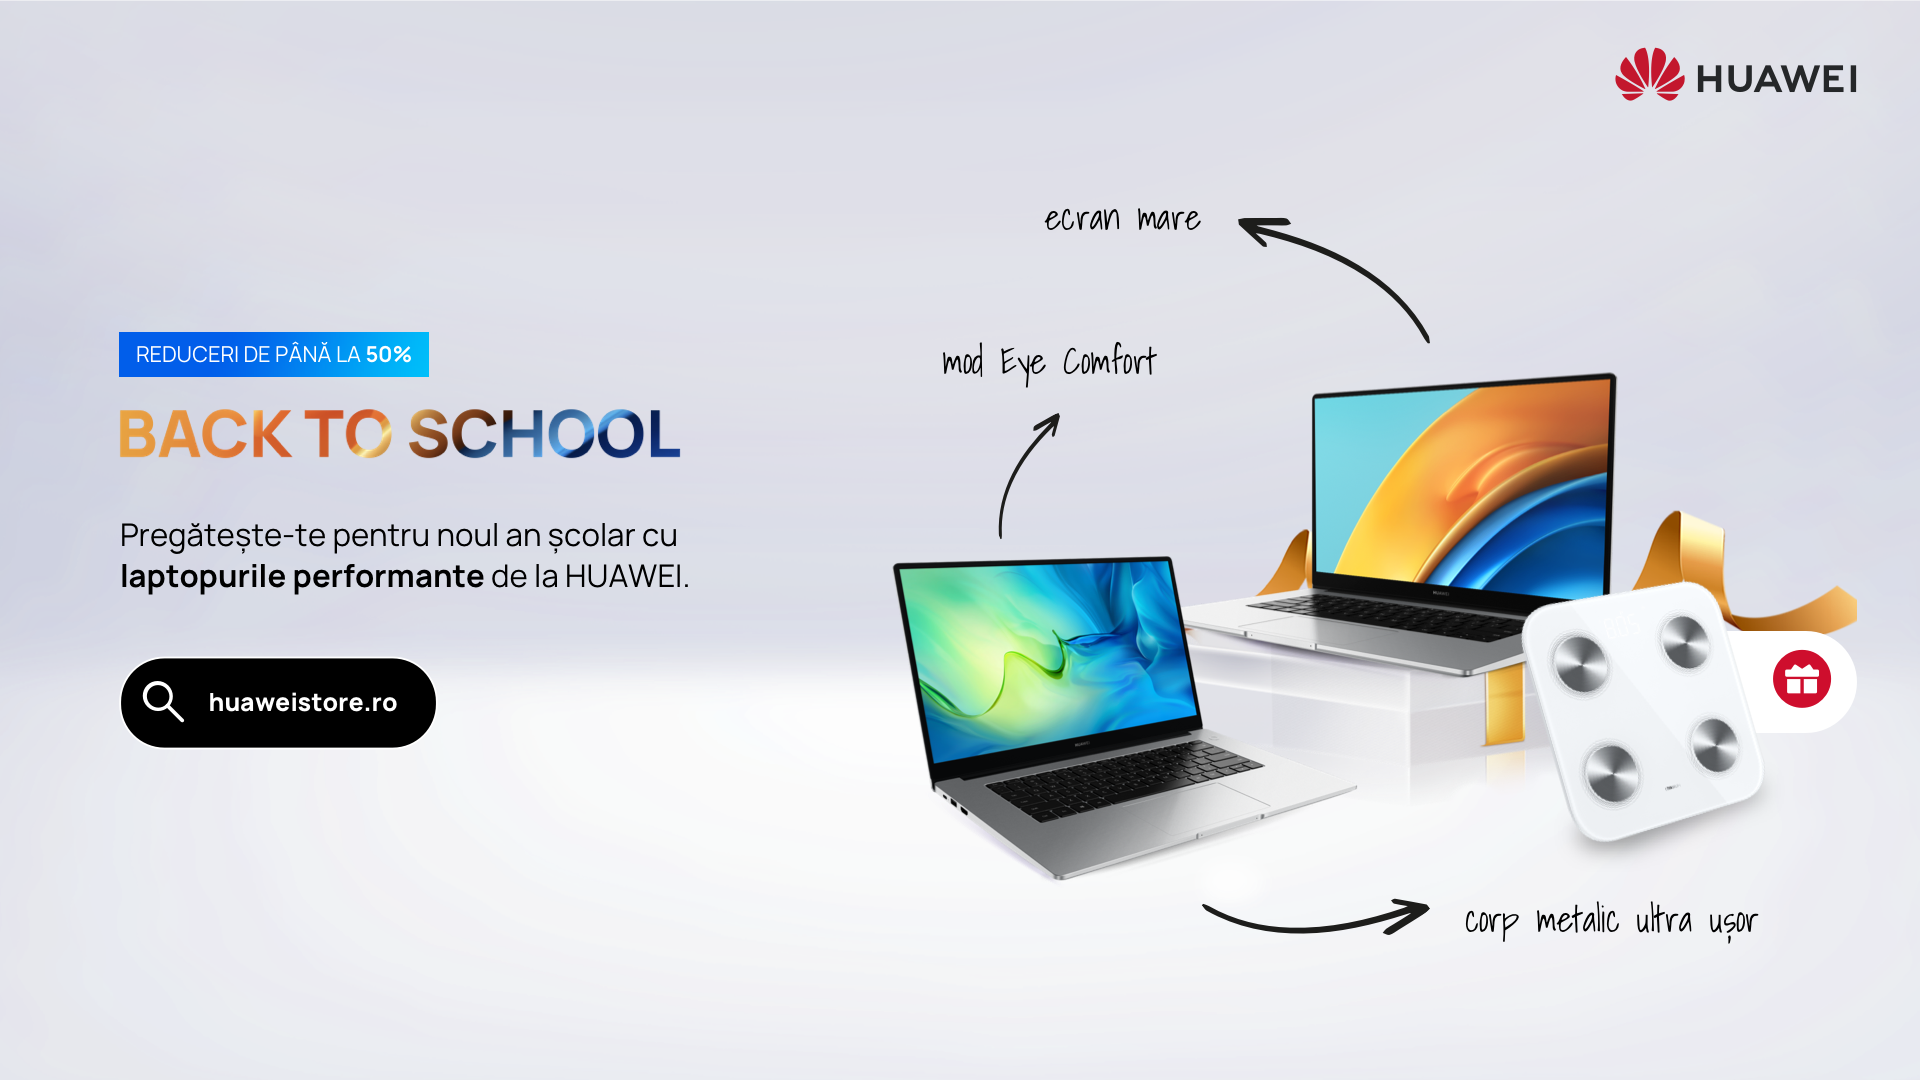 Huawei Back To School continuă cu reduceri de până la 50% și noi surprize la produse din segmentul PC